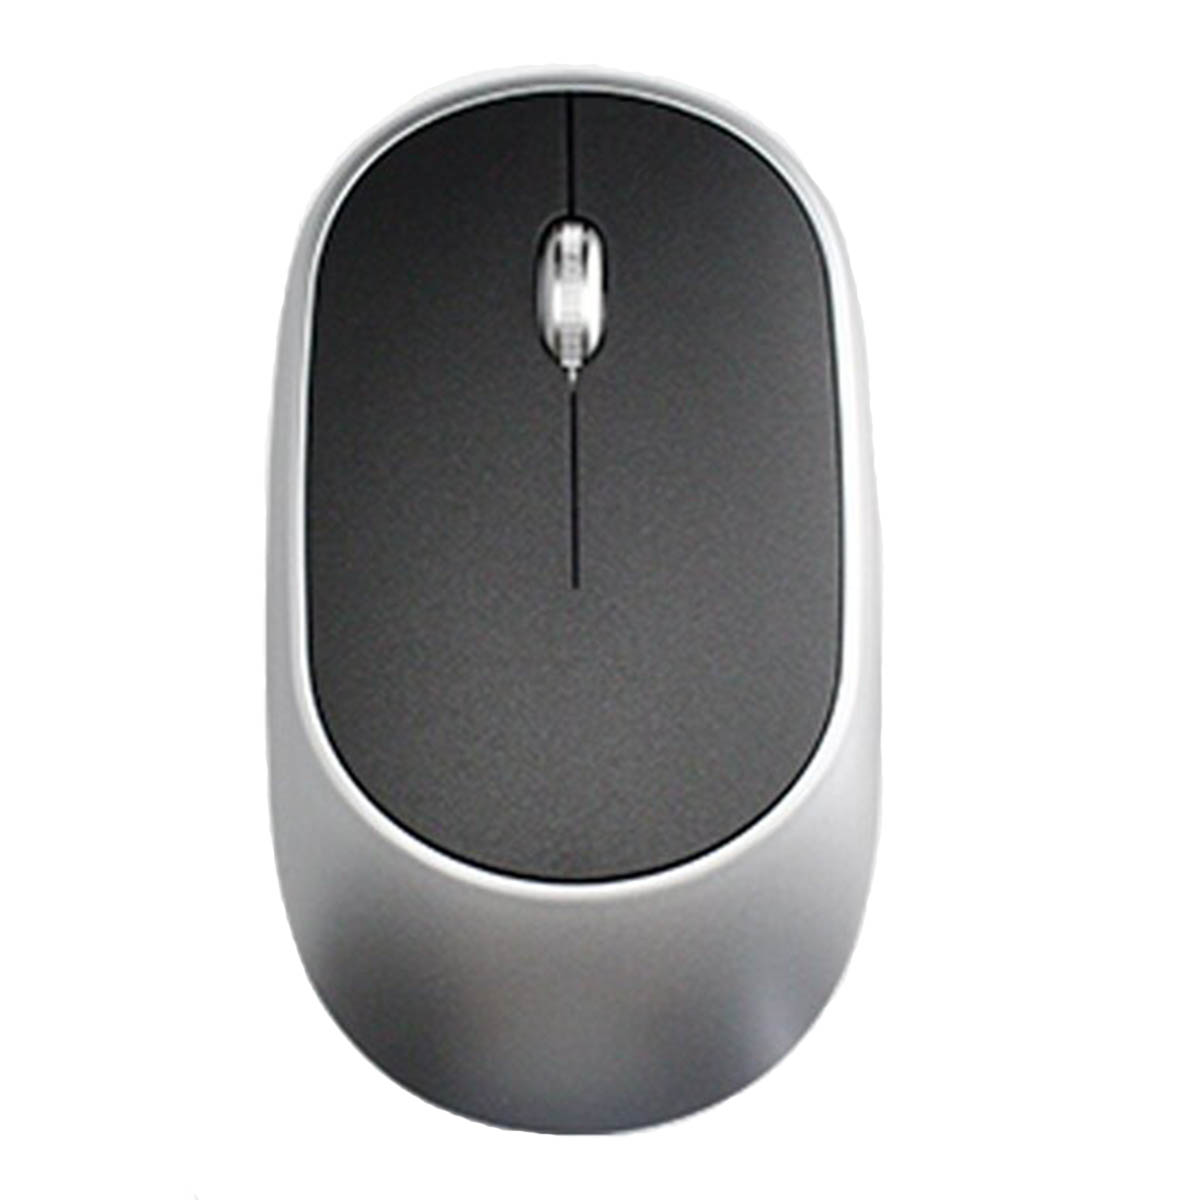 Мышь беспроводная, оптическая, 2.4G Wireless Mouse E100, 3 кнопки, 1600 dpi, цвет черно серебристый